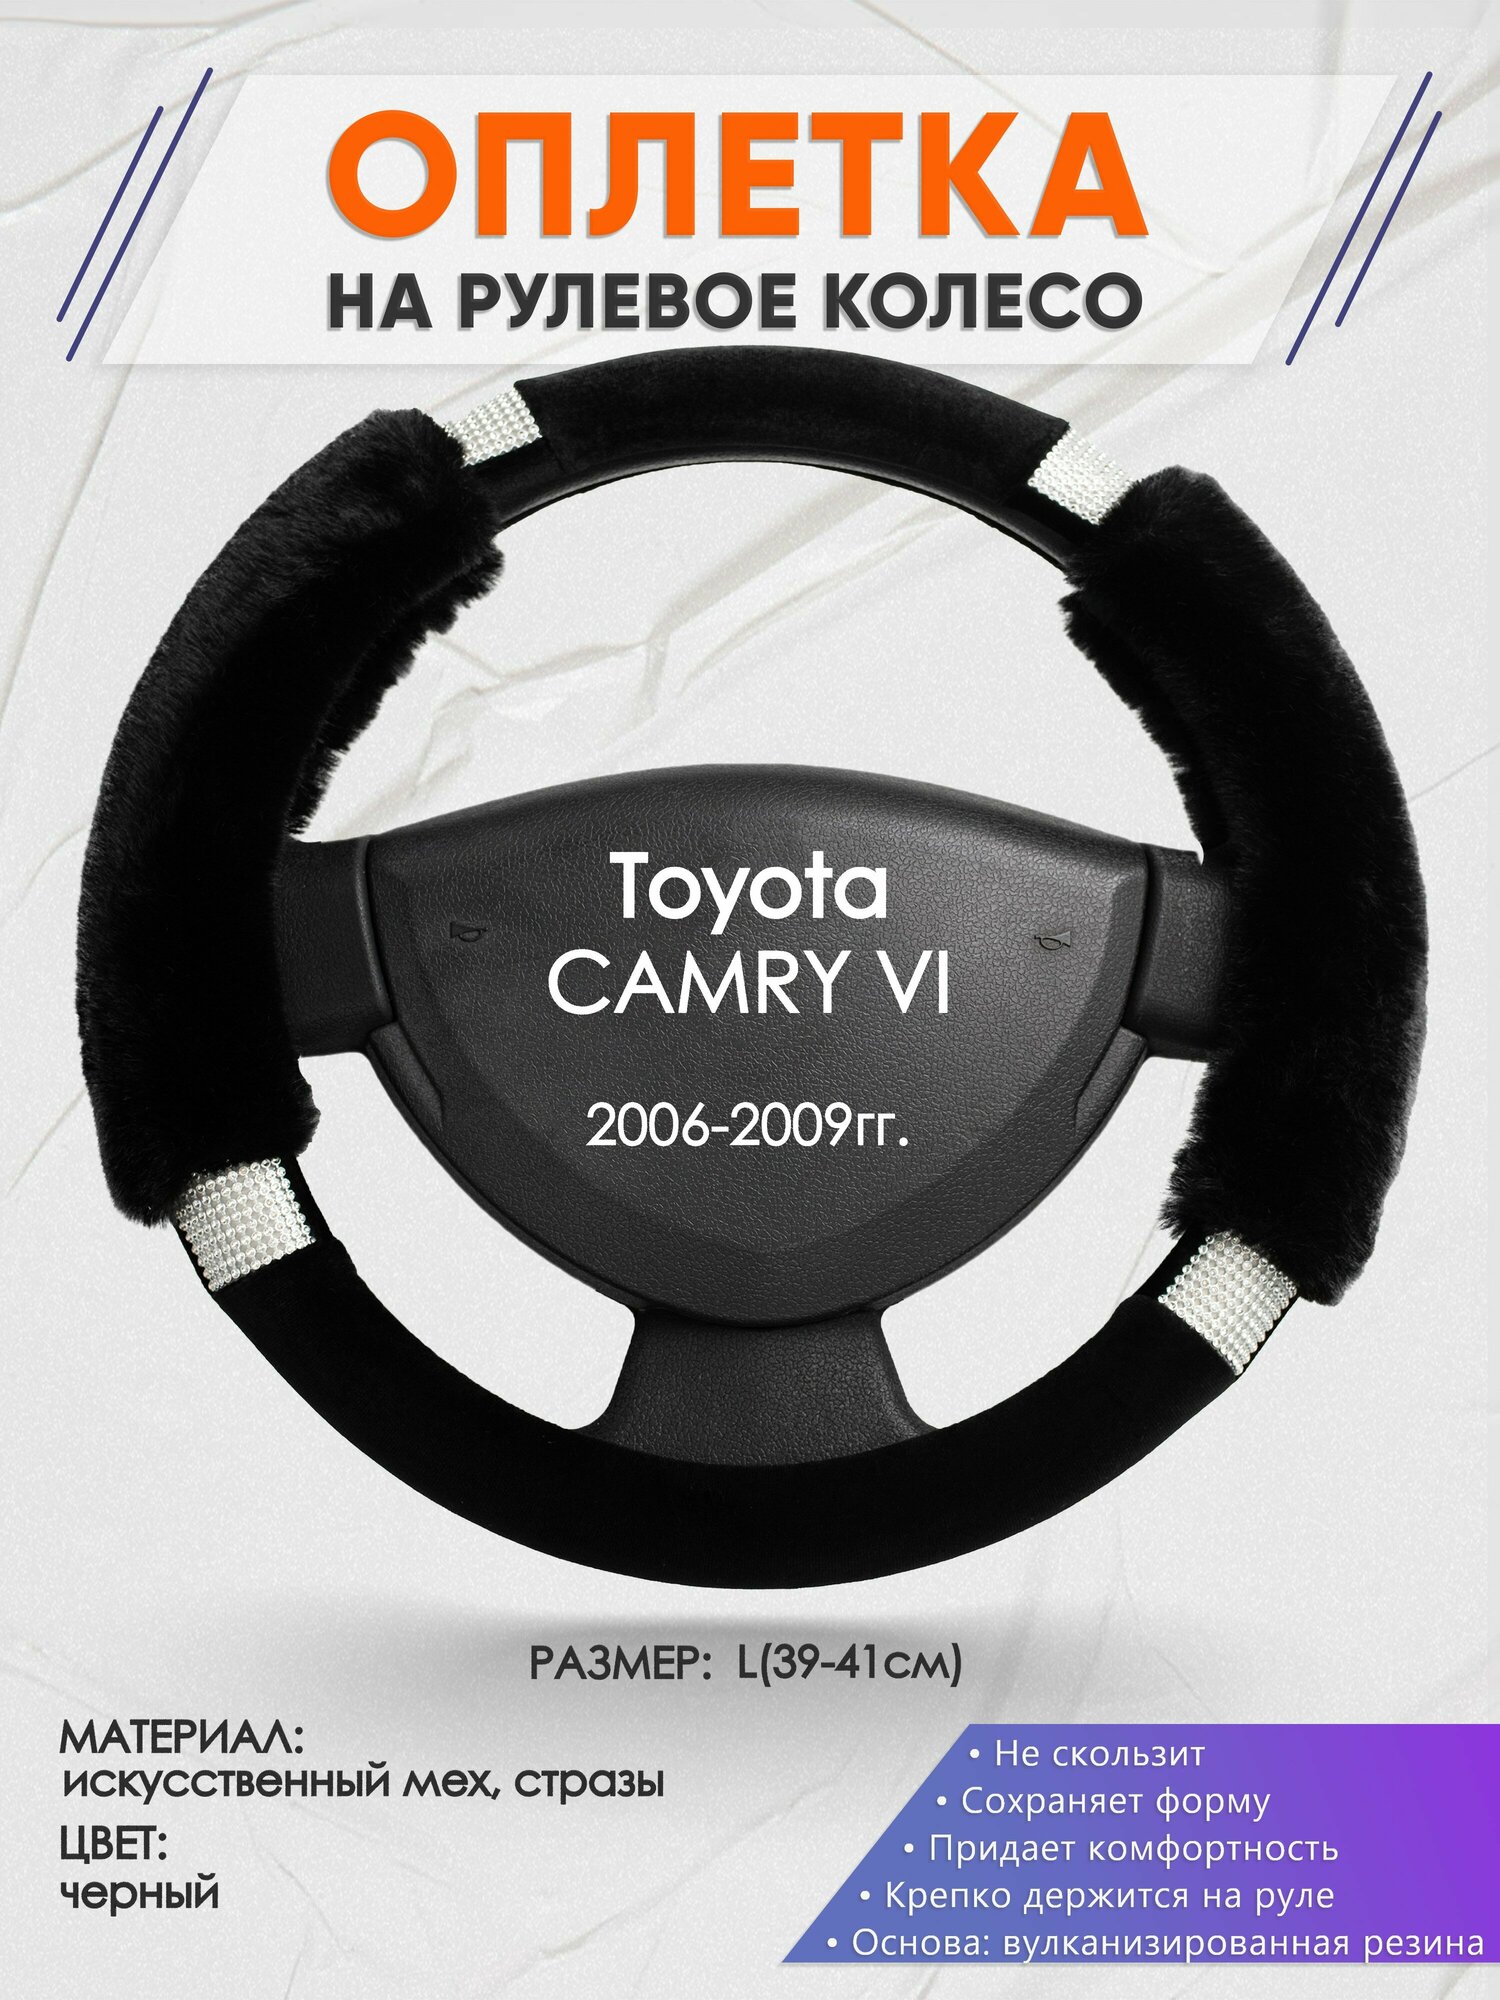 Оплетка на руль для Toyota CAMRY 6(Тойота Камри 6) 2006-2009, L(39-41см), Искусственный мех 38